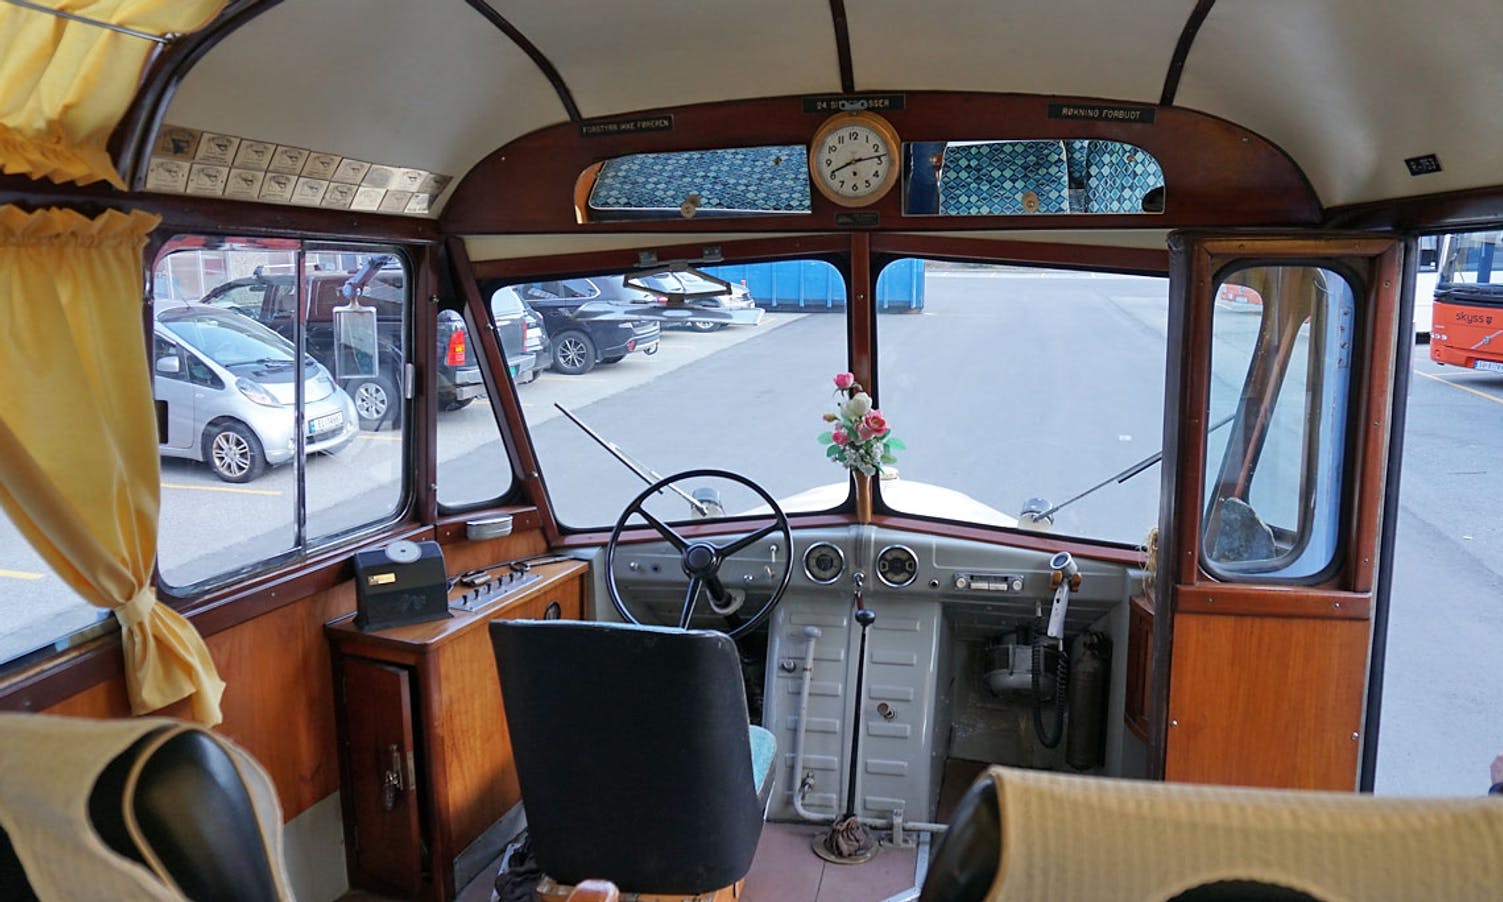 Bedfor '50 er ein av fem bussar frå Hordaland på treffet. (Foto: KVB)